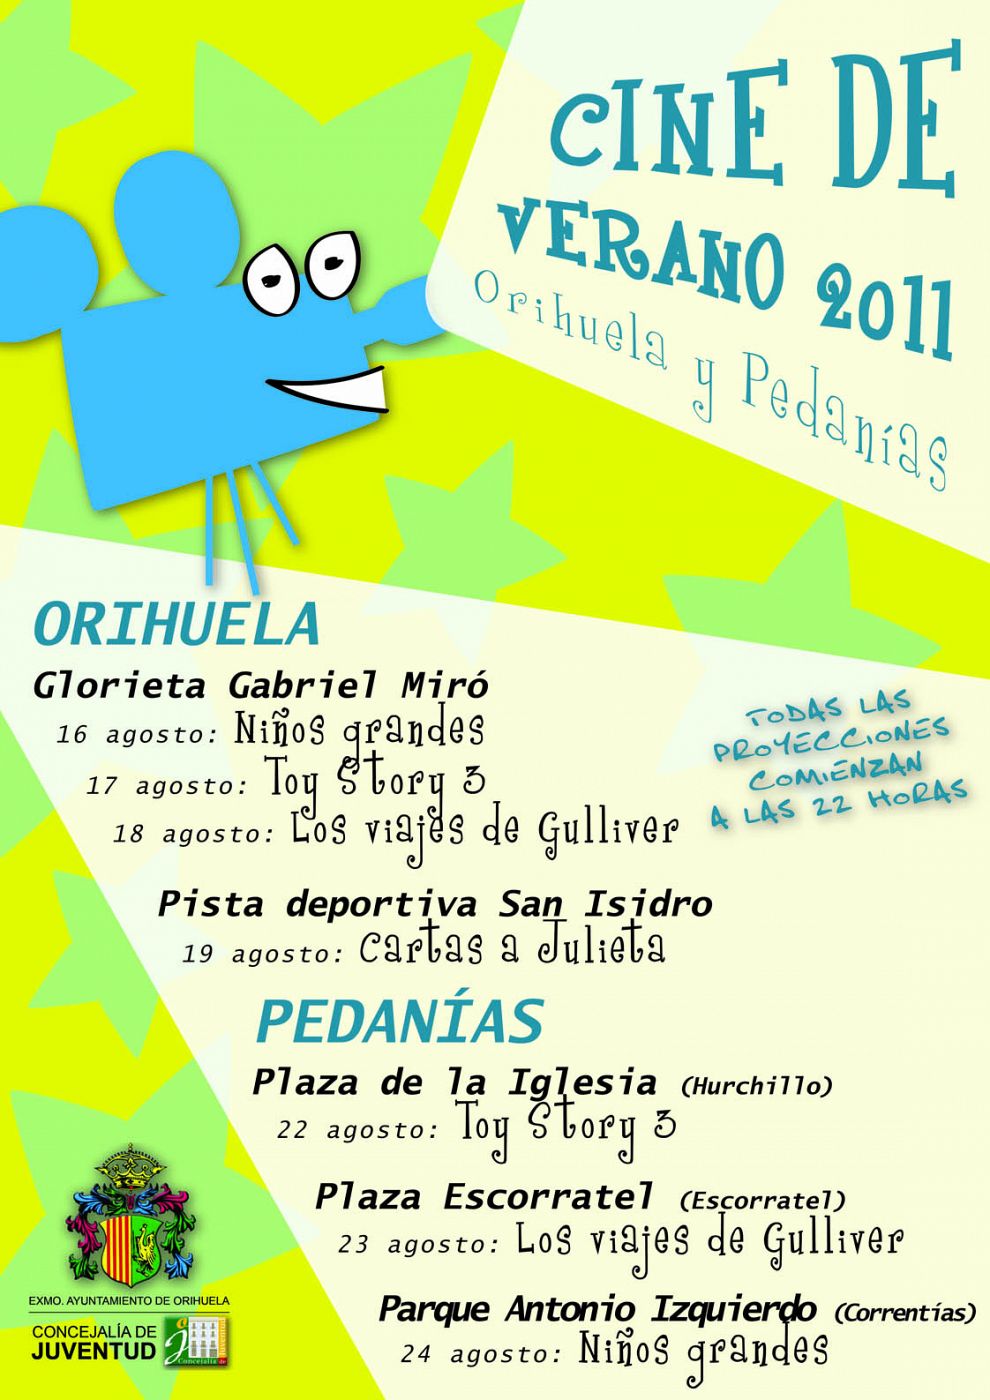 Cartel de la programación del cine de  verano de 2011 de Orihuela (Alicante).